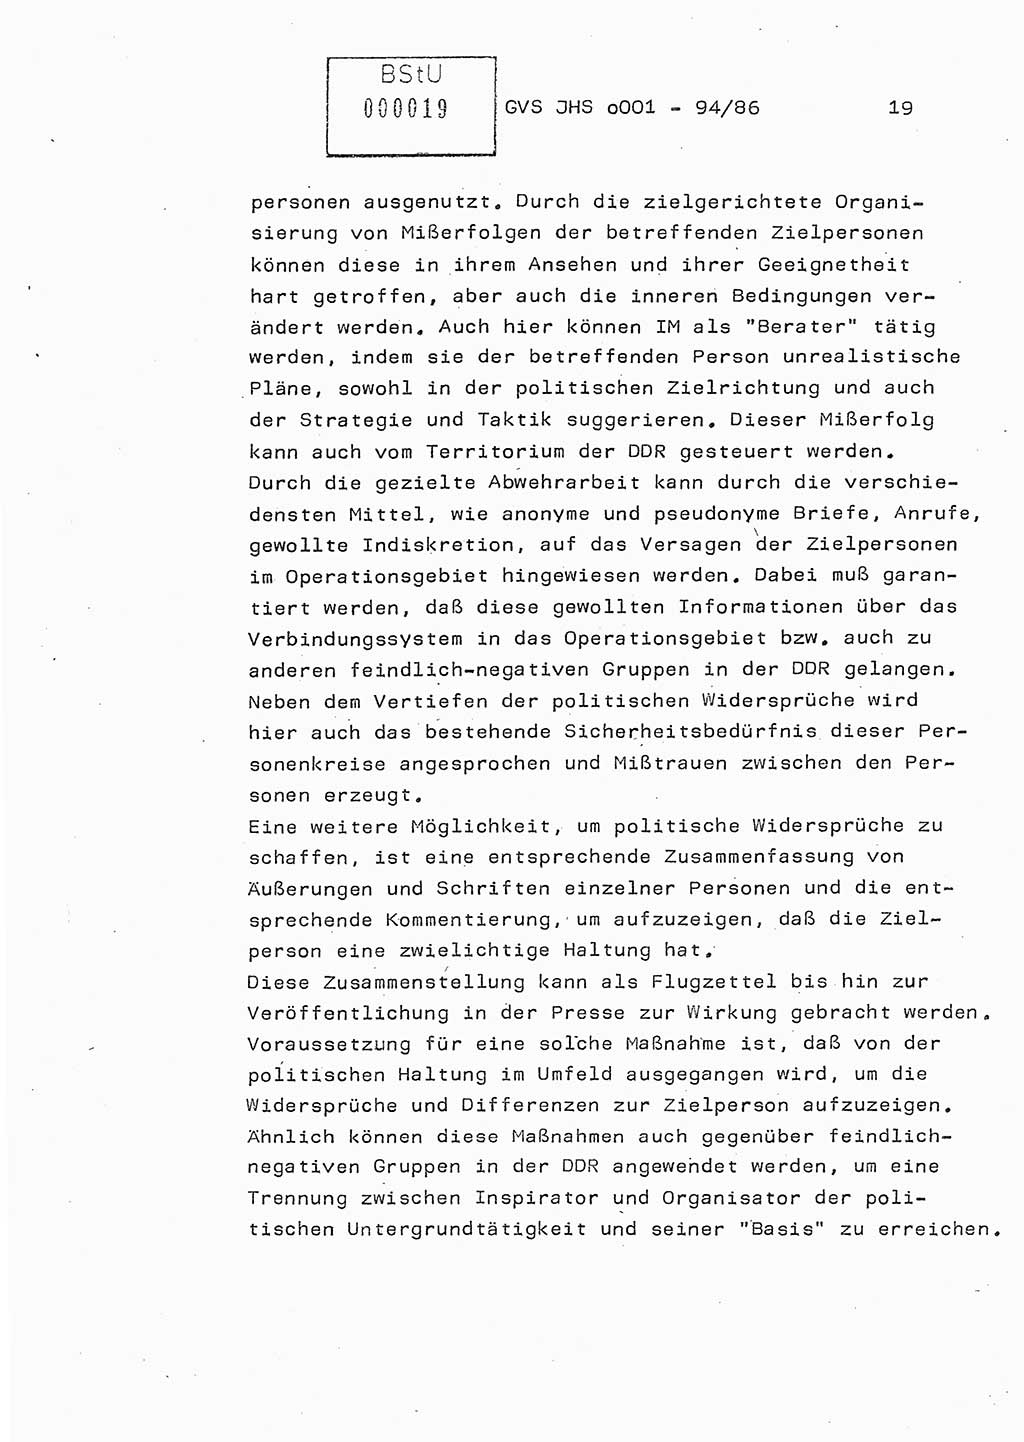 Diplomarbeit Oberleutnant Volkmar Pechmann (HA ⅩⅩ/5), Ministerium für Staatssicherheit (MfS) [Deutsche Demokratische Republik (DDR)], Juristische Hochschule (JHS), Geheime Verschlußsache (GVS) o001-94/86, Potsdam 1986, Blatt 19 (Dipl.-Arb. MfS DDR JHS GVS o001-94/86 1986, Bl. 19)